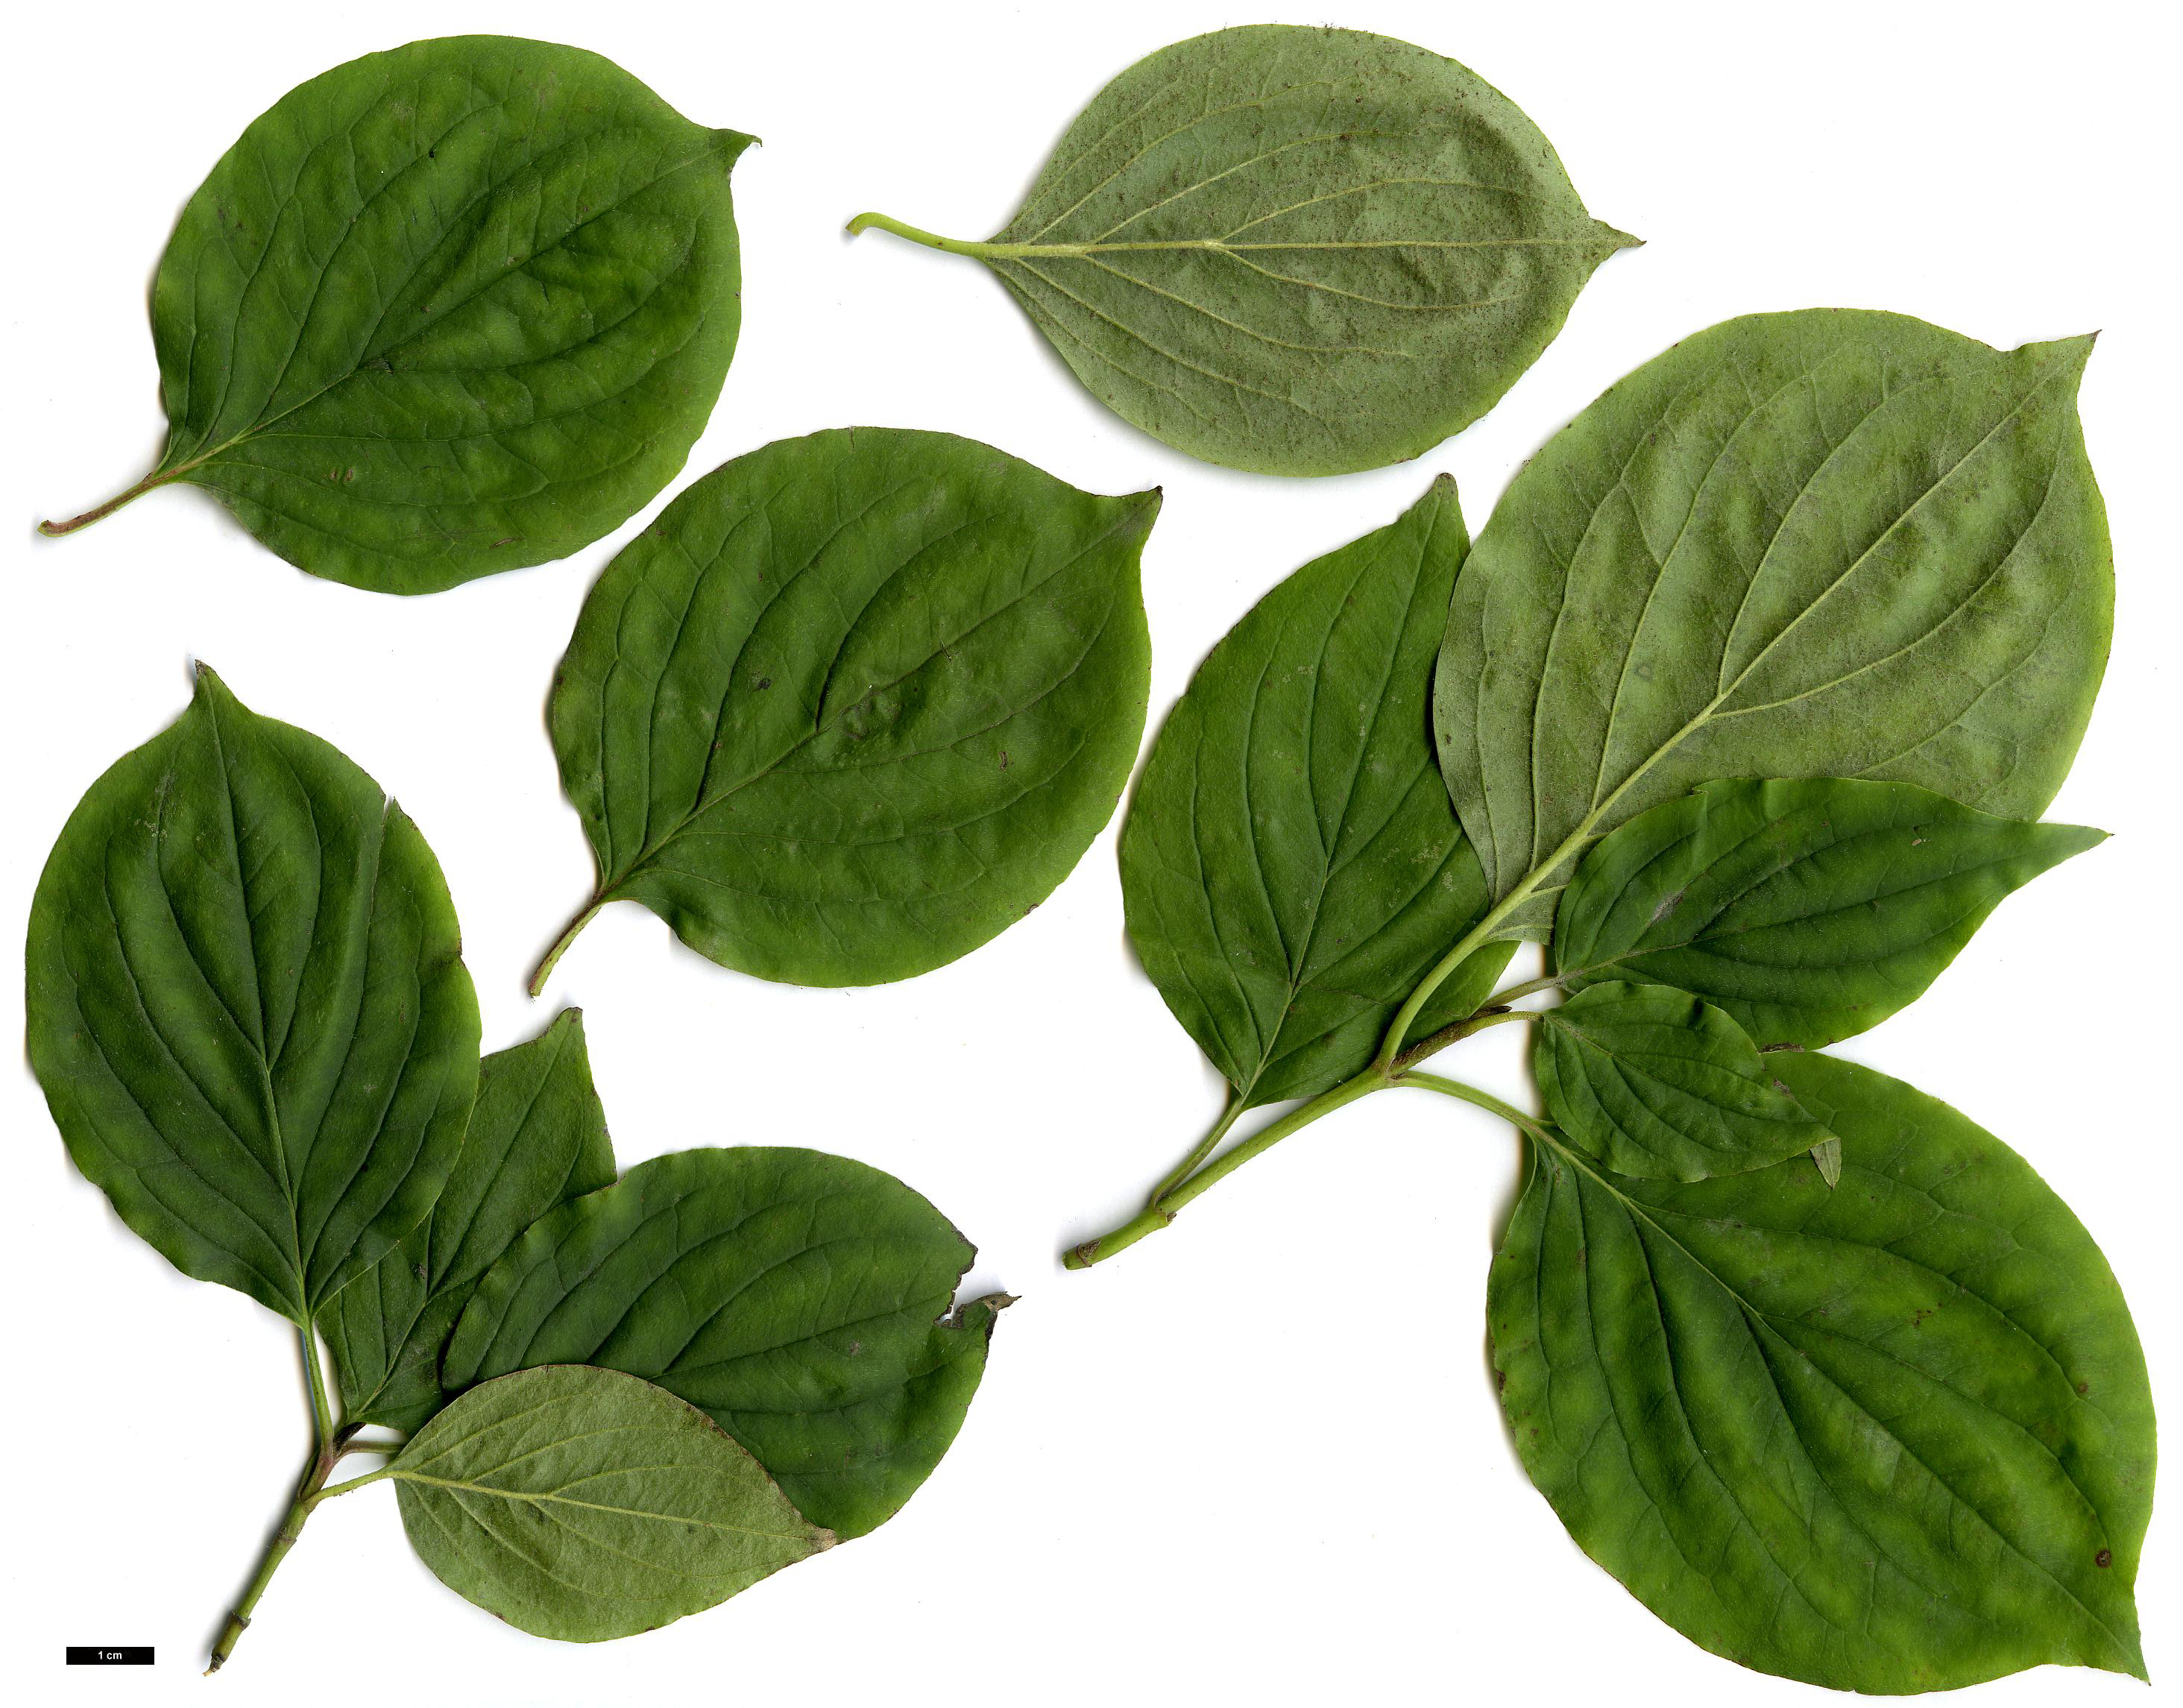 High resolution image: Family: Cornaceae - Genus: Cornus - Taxon: sanguinea